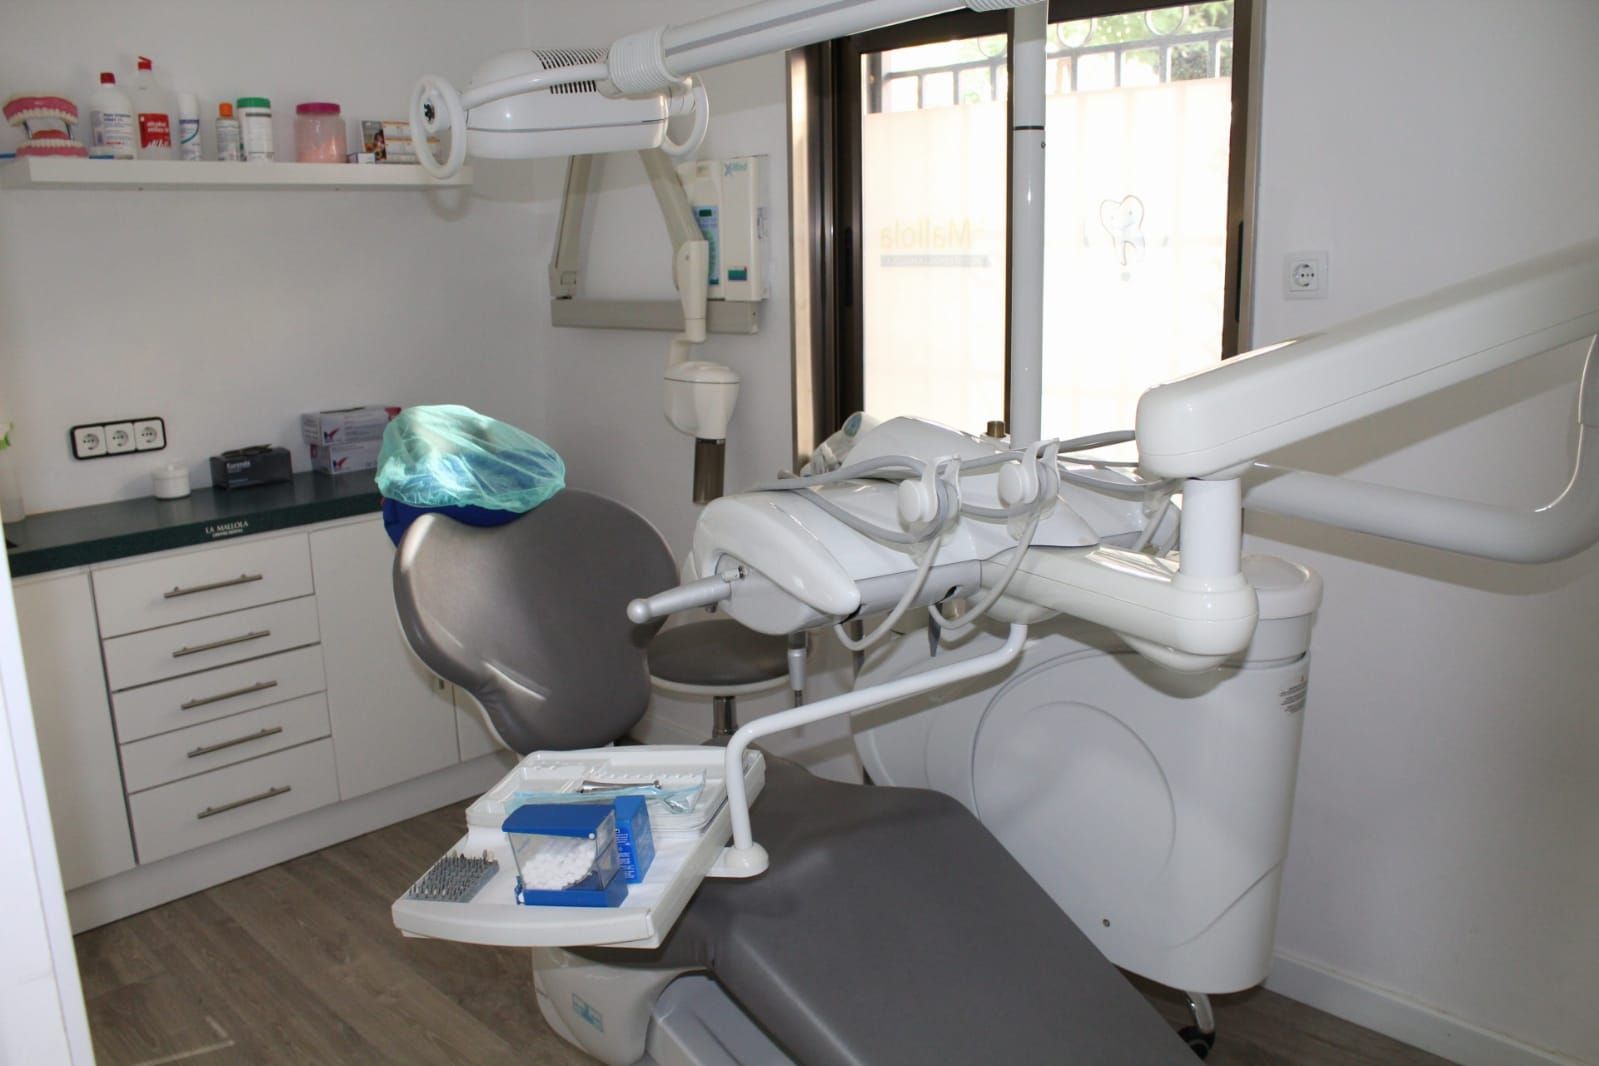 Foto 13 de Especialistas en estética dental en  | Clínica Dental La Mallola